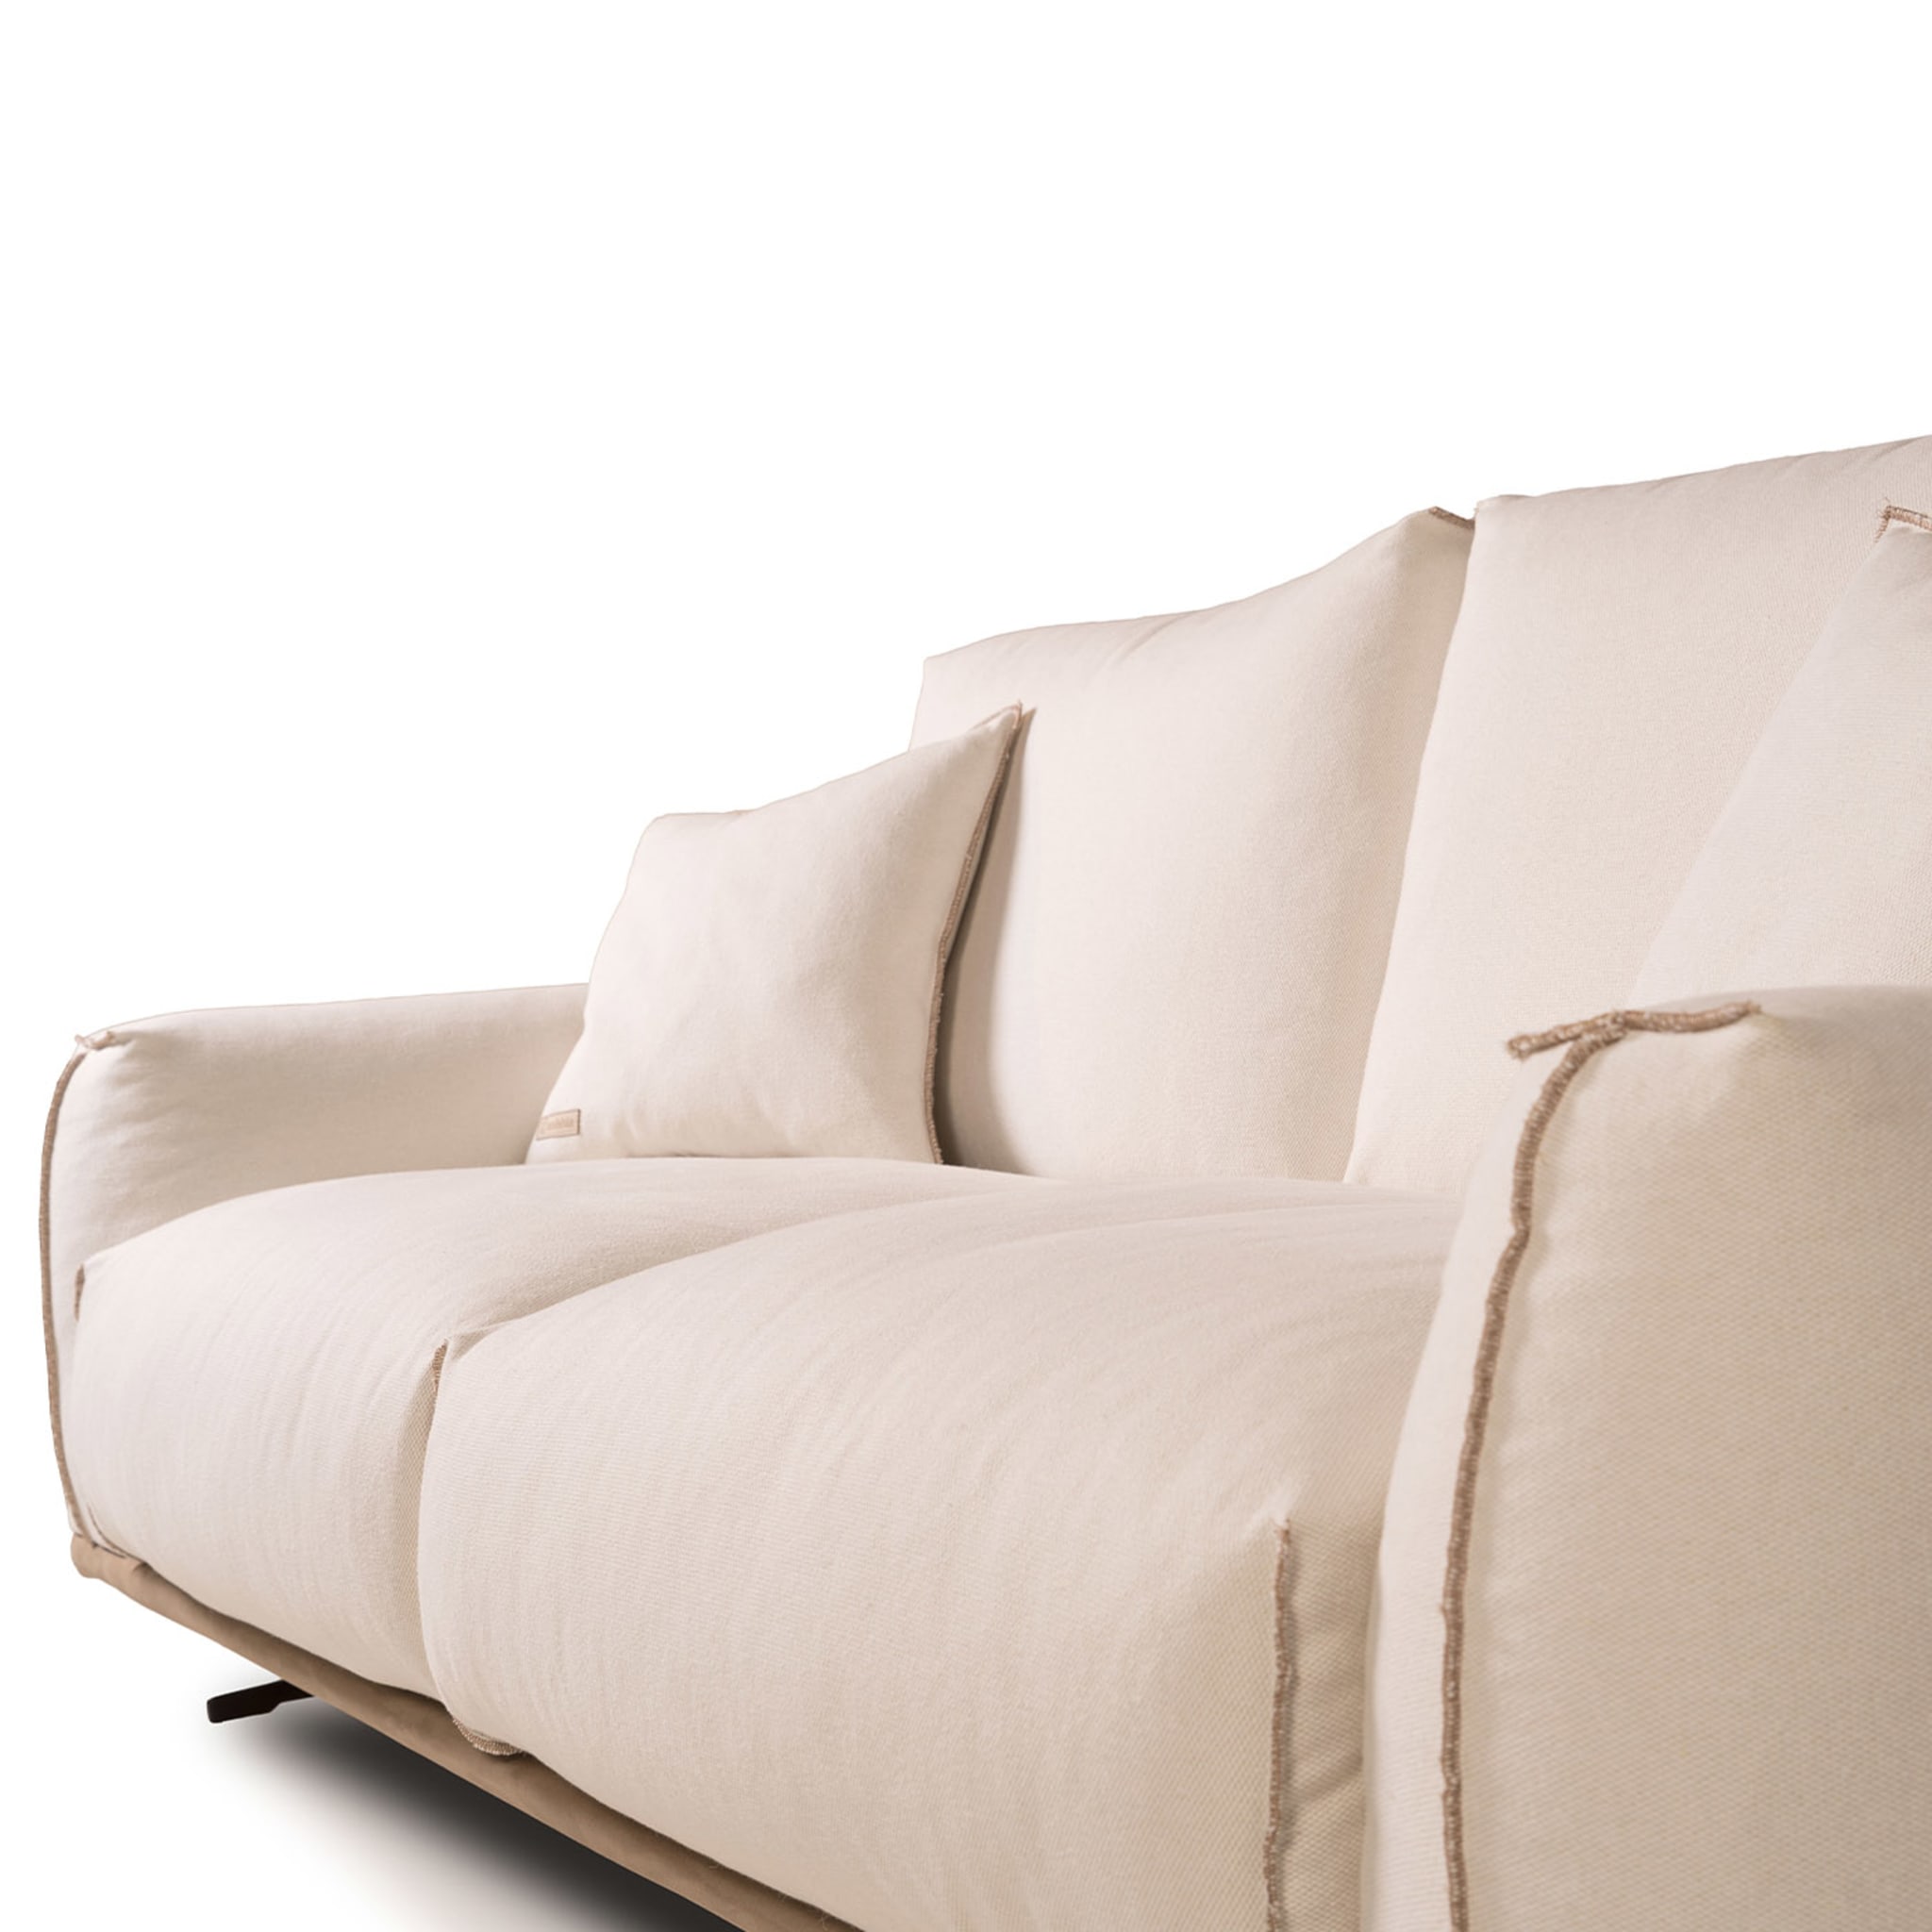 Boboli 2 Seater Sofa by Marco and Giulio Mantellassi - Alternative view 4